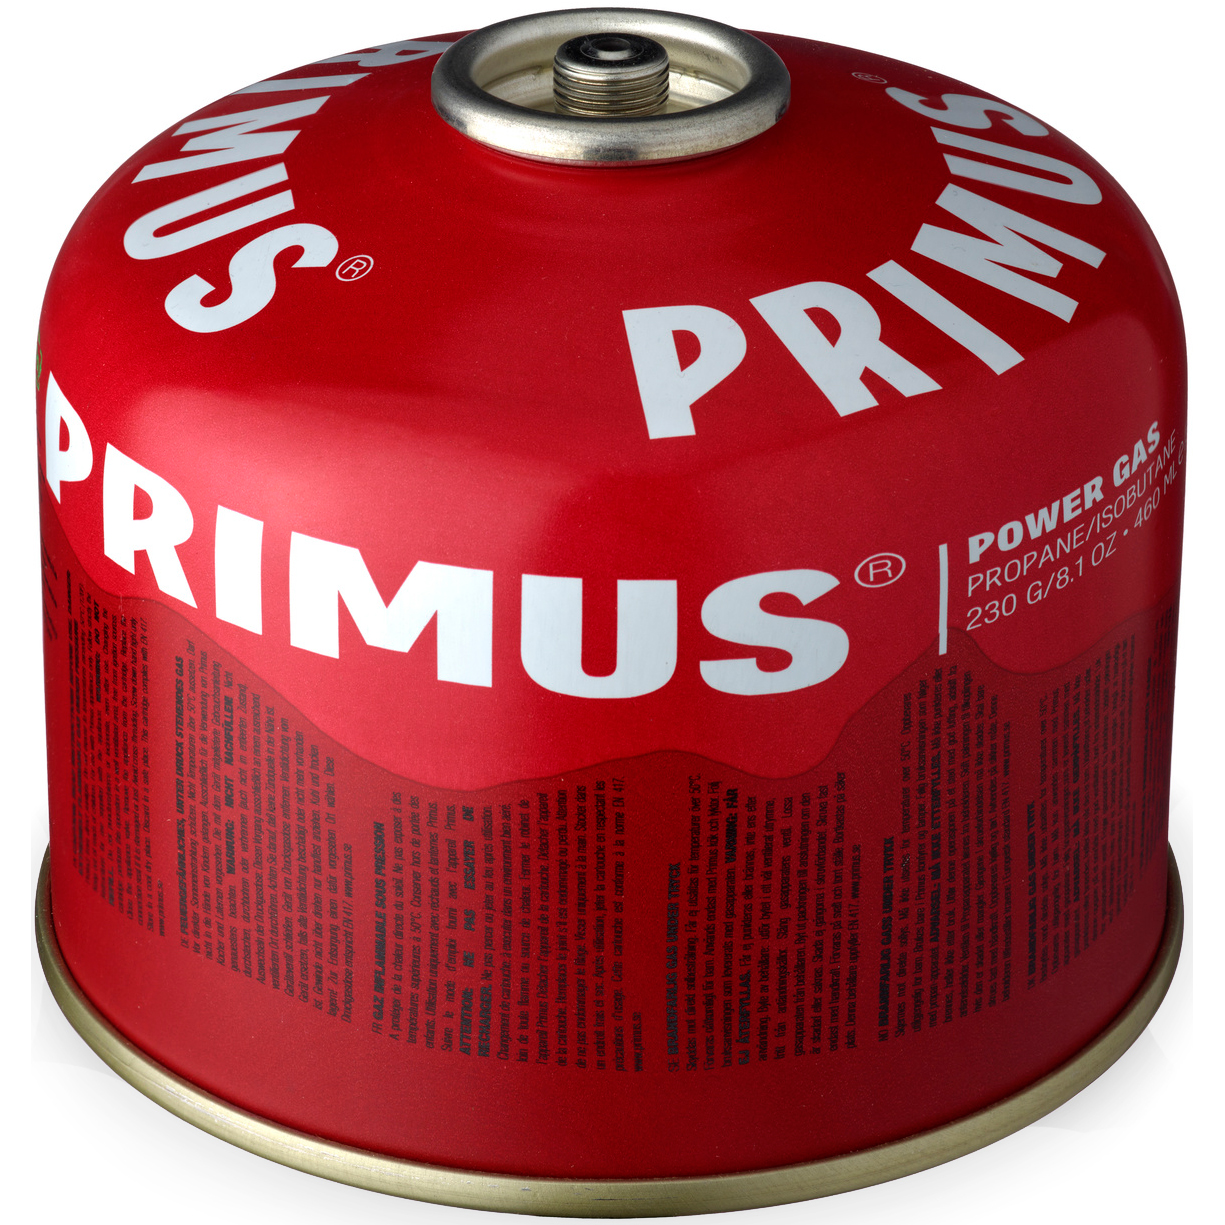 Productfoto van Primus Power Gas Steekpatroon - 230g